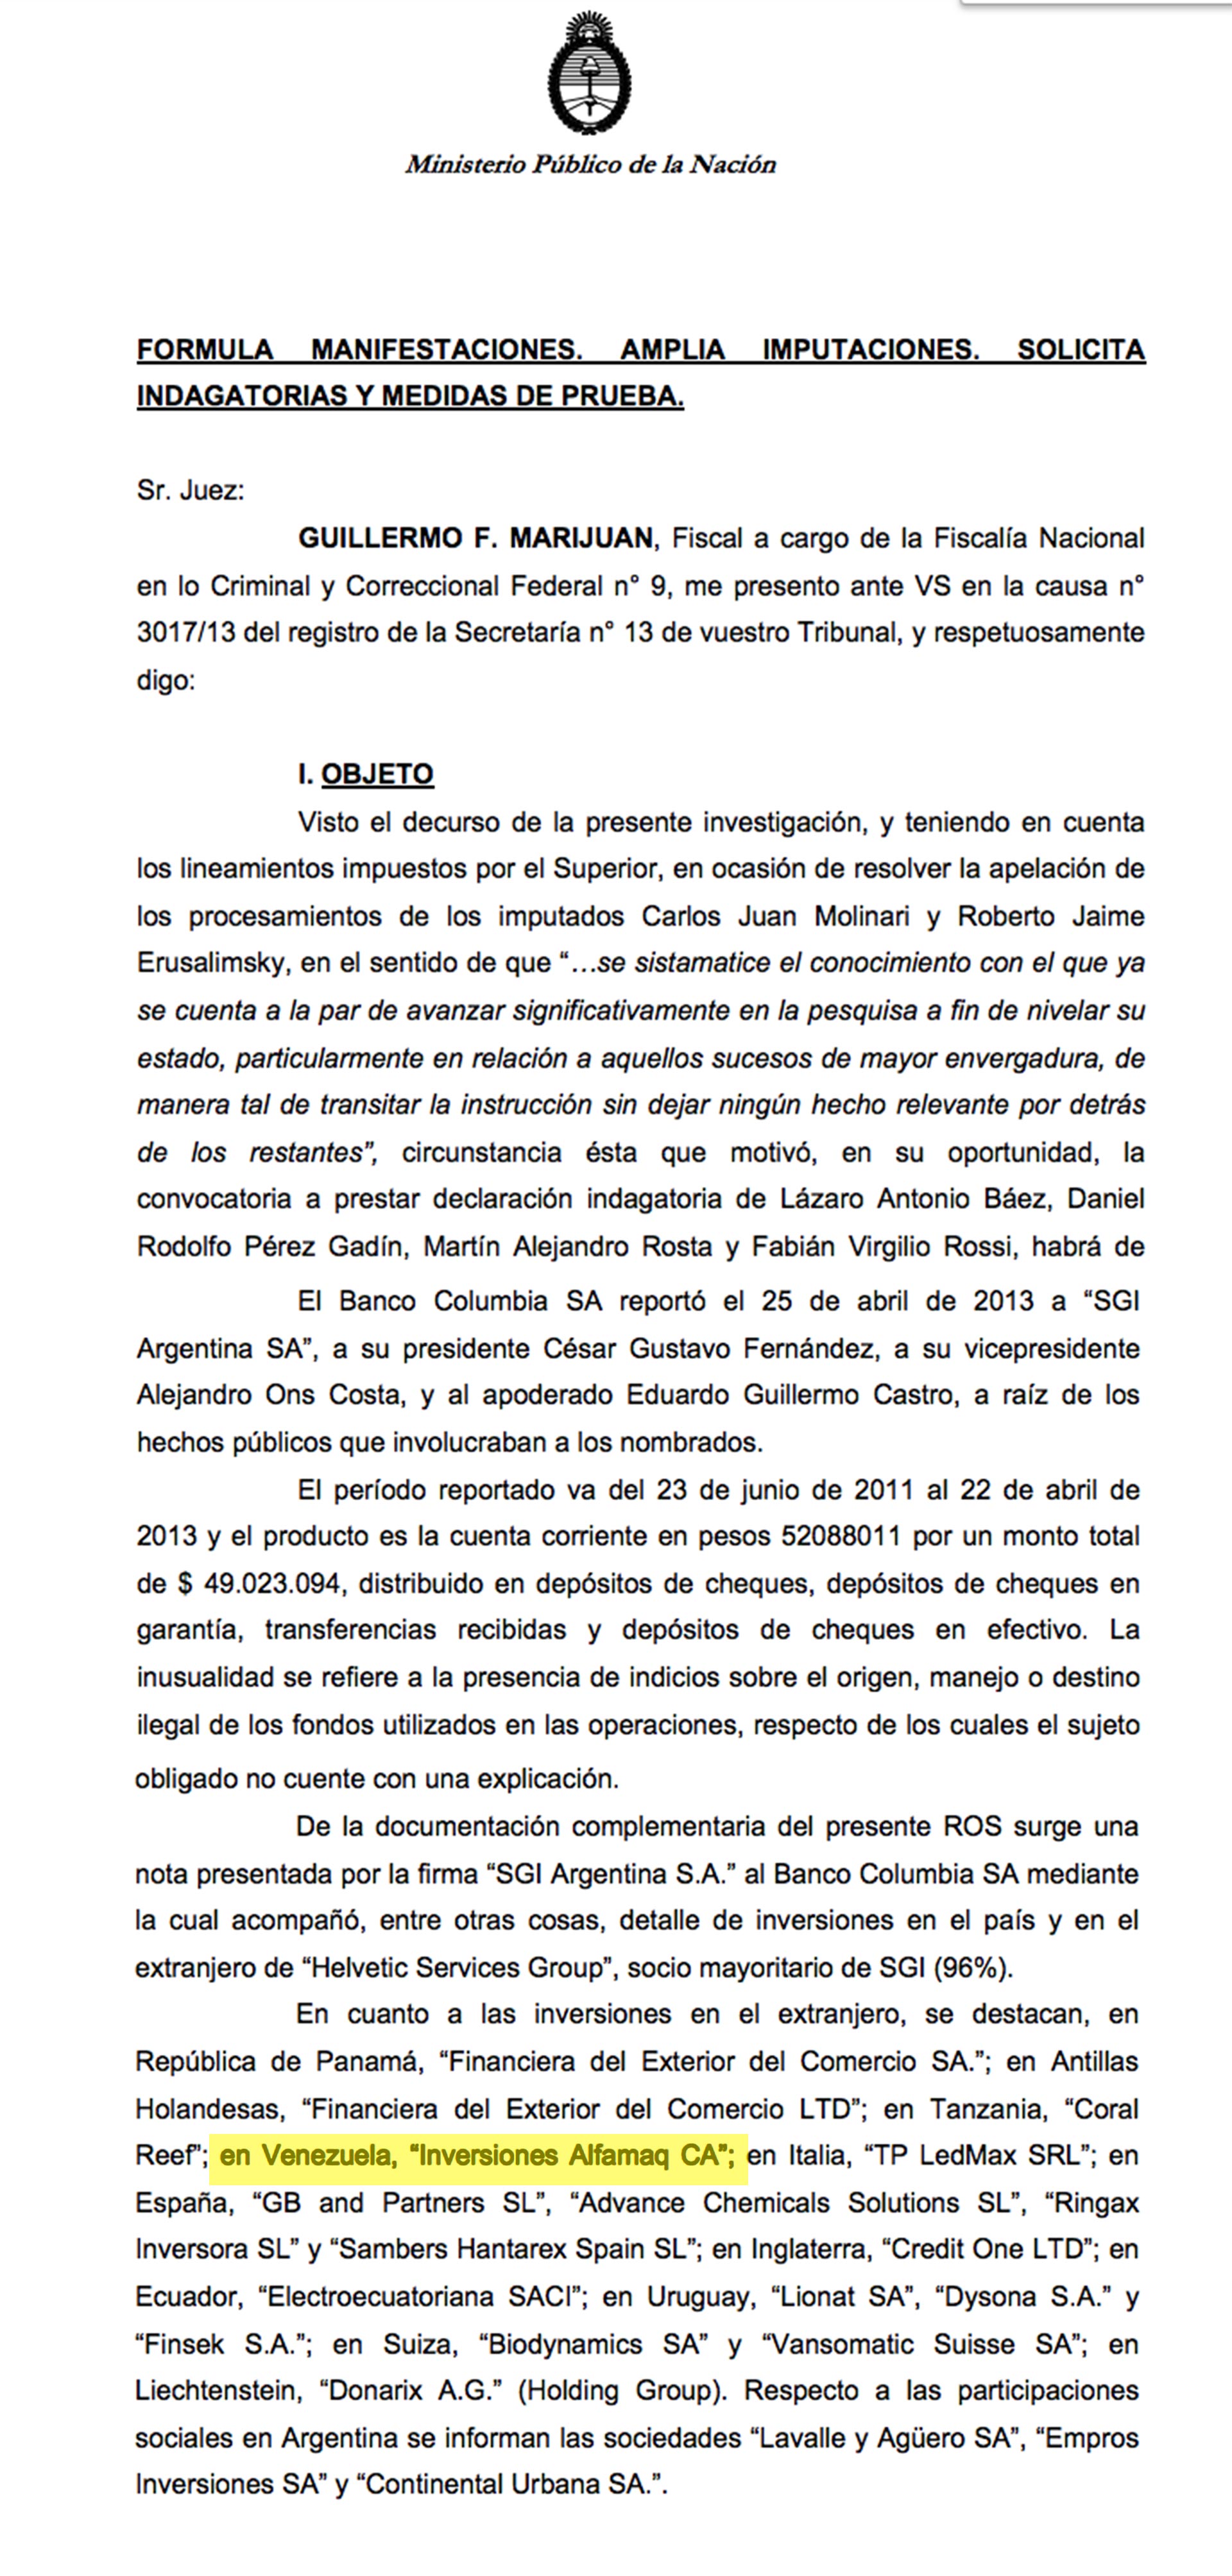 La explicación de la financiera SGI en 2013 al Banco Columbia para justificar el origen de los fondos: entre las inversiones de Helvetic -su firma controlante- mencionaba a Alfamaq de los Ceballos en Venezuela.